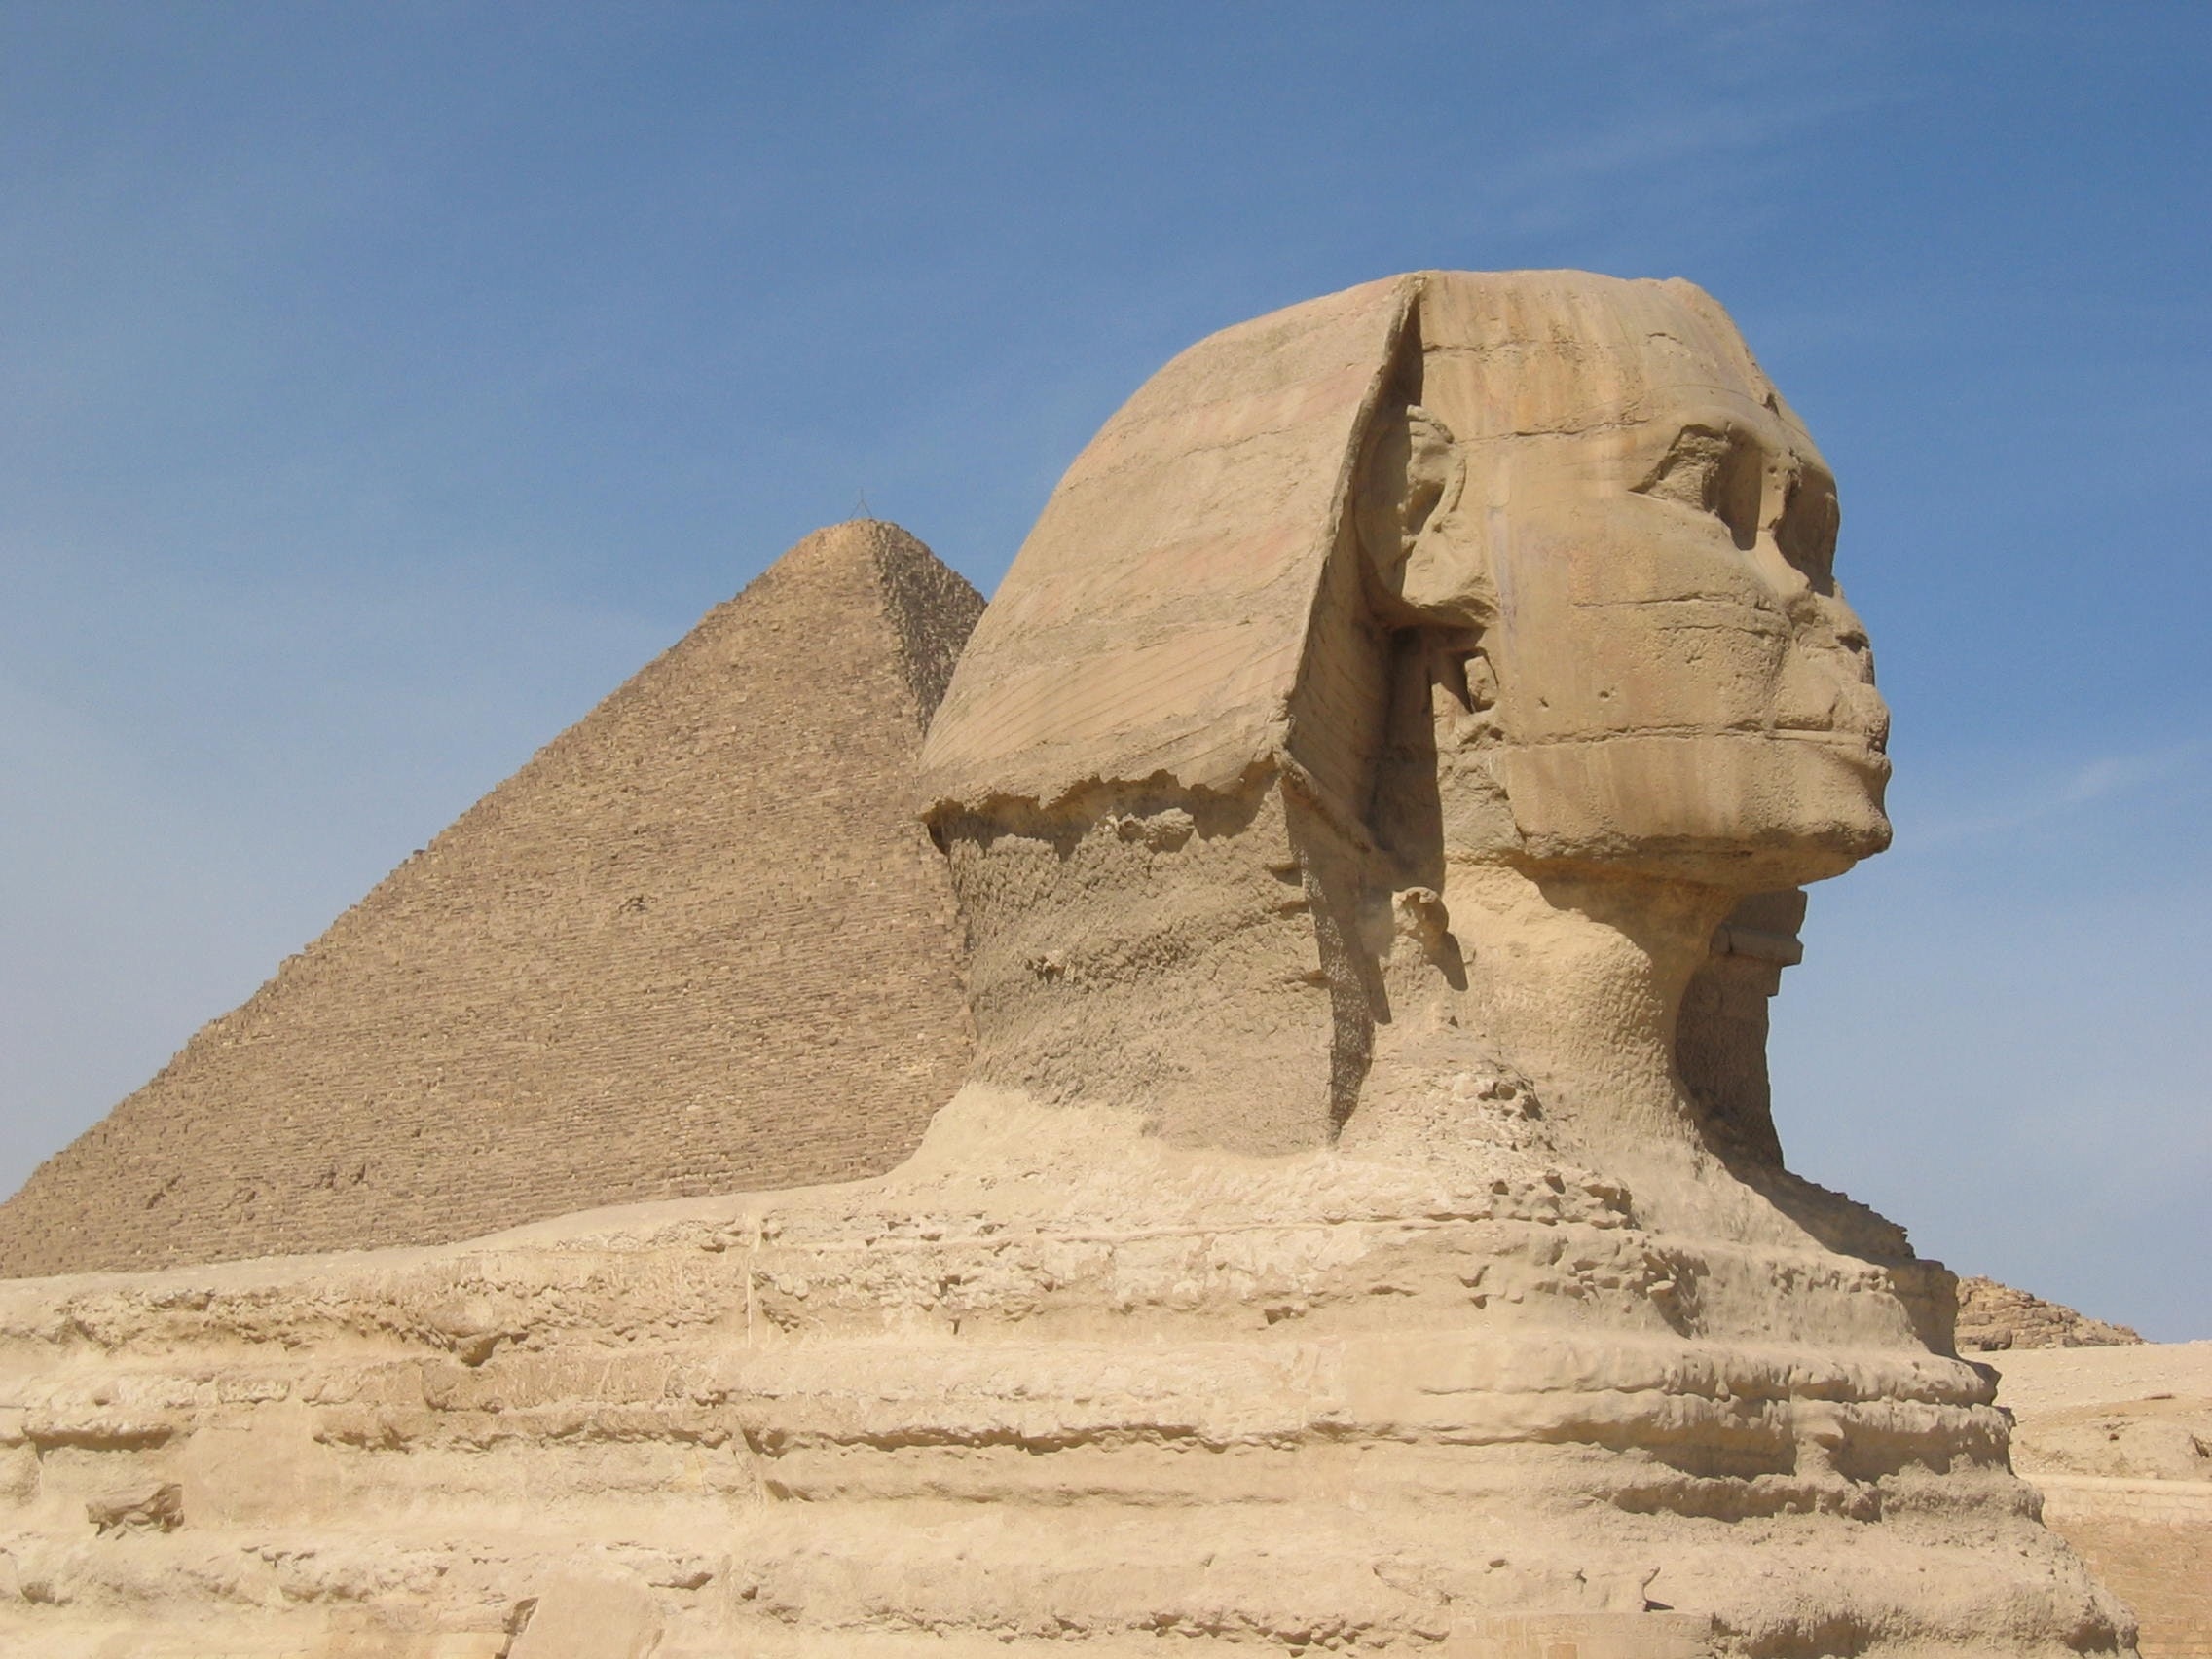 desert-egypt-great-sphinx-of-giza-2359.jpg